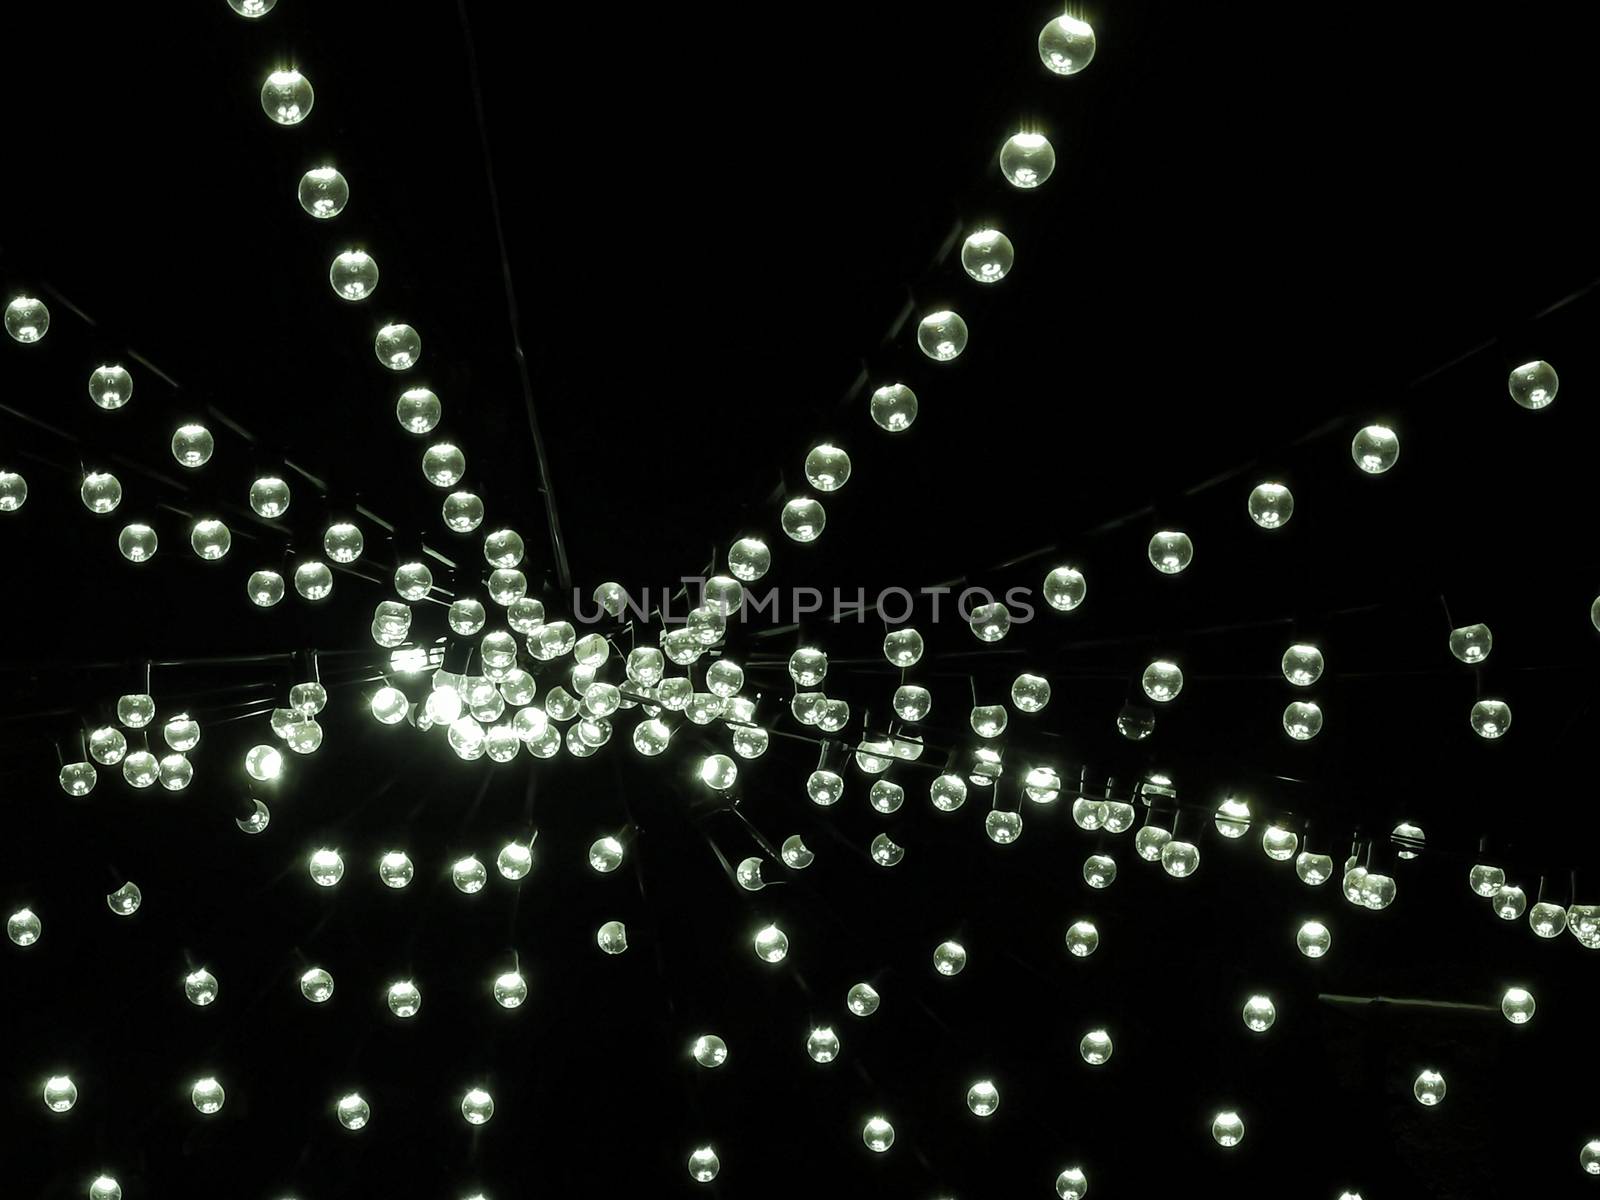 Decorative light bulbs during festive season by sonandonures